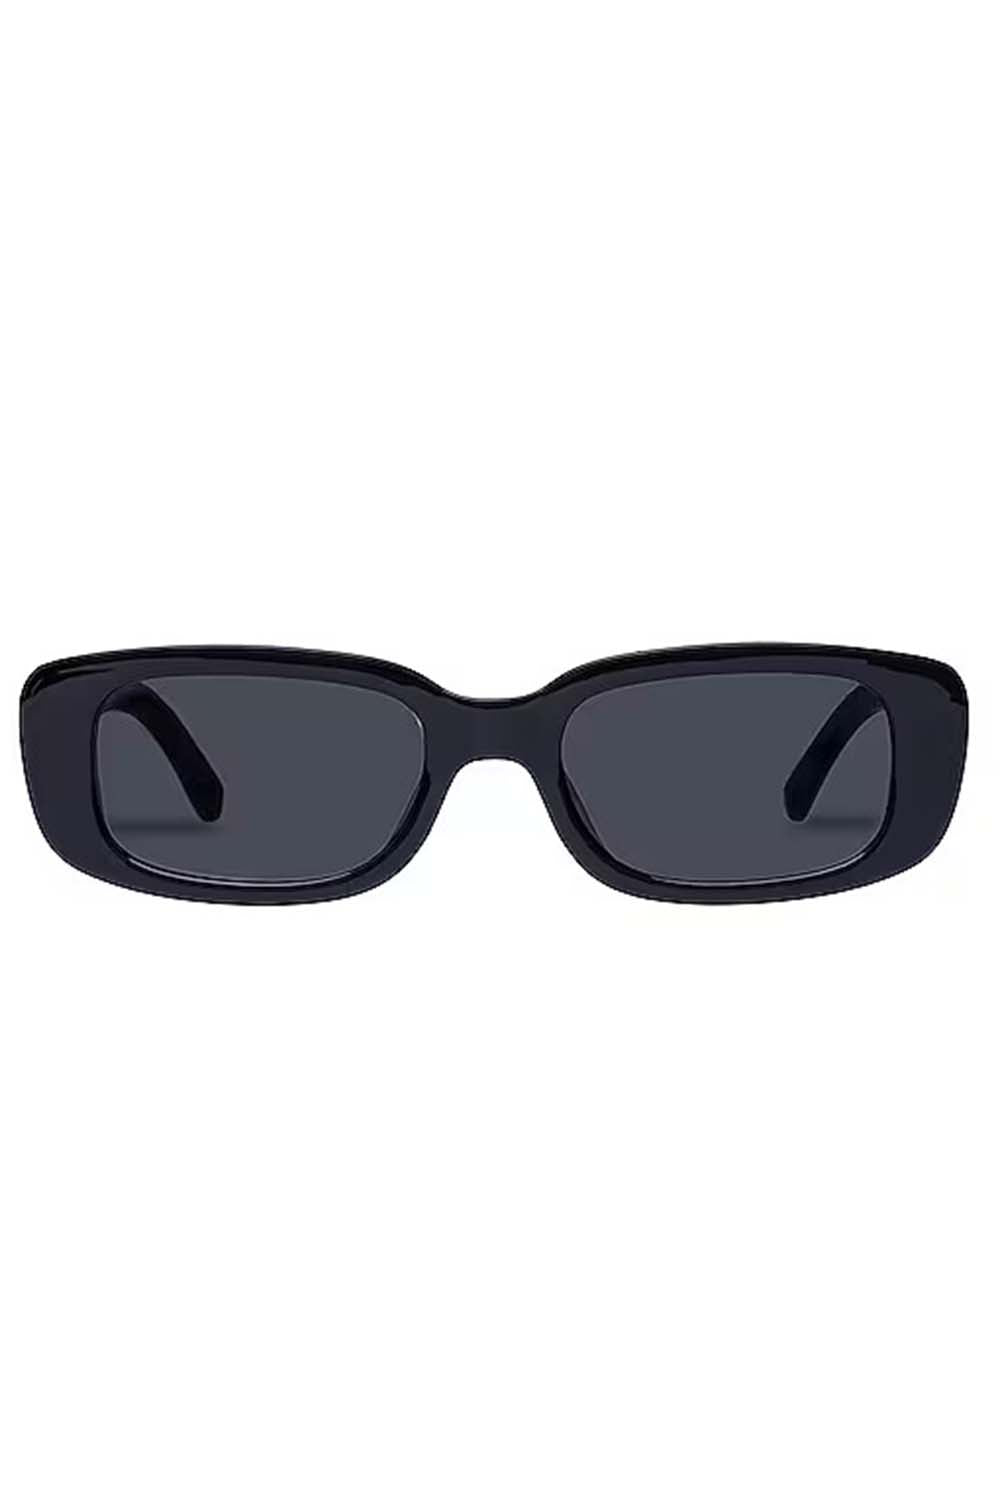 Ceres V2 Sunglasses - Black